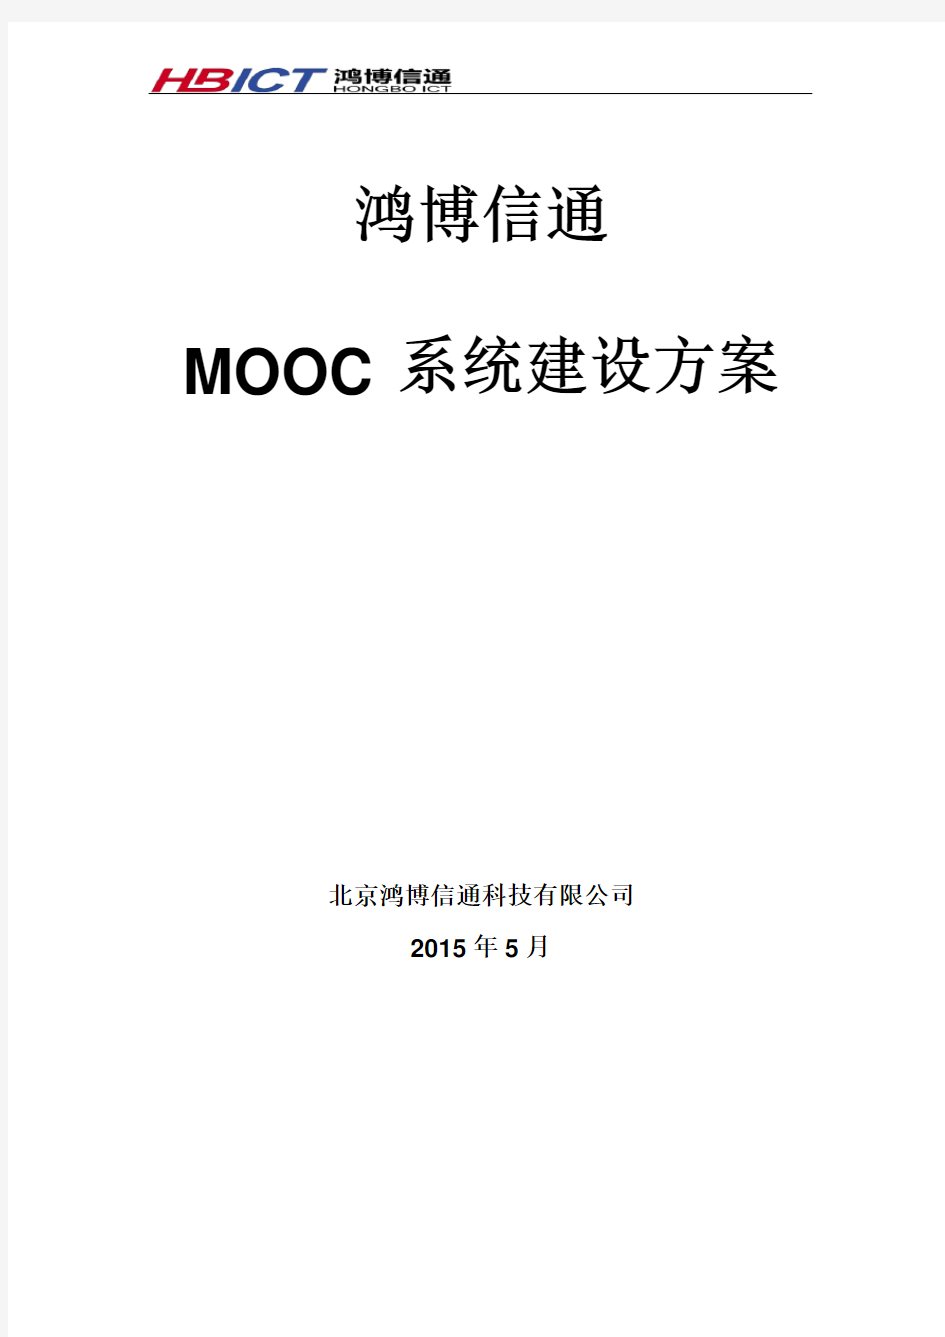 MOOC平台解决方案